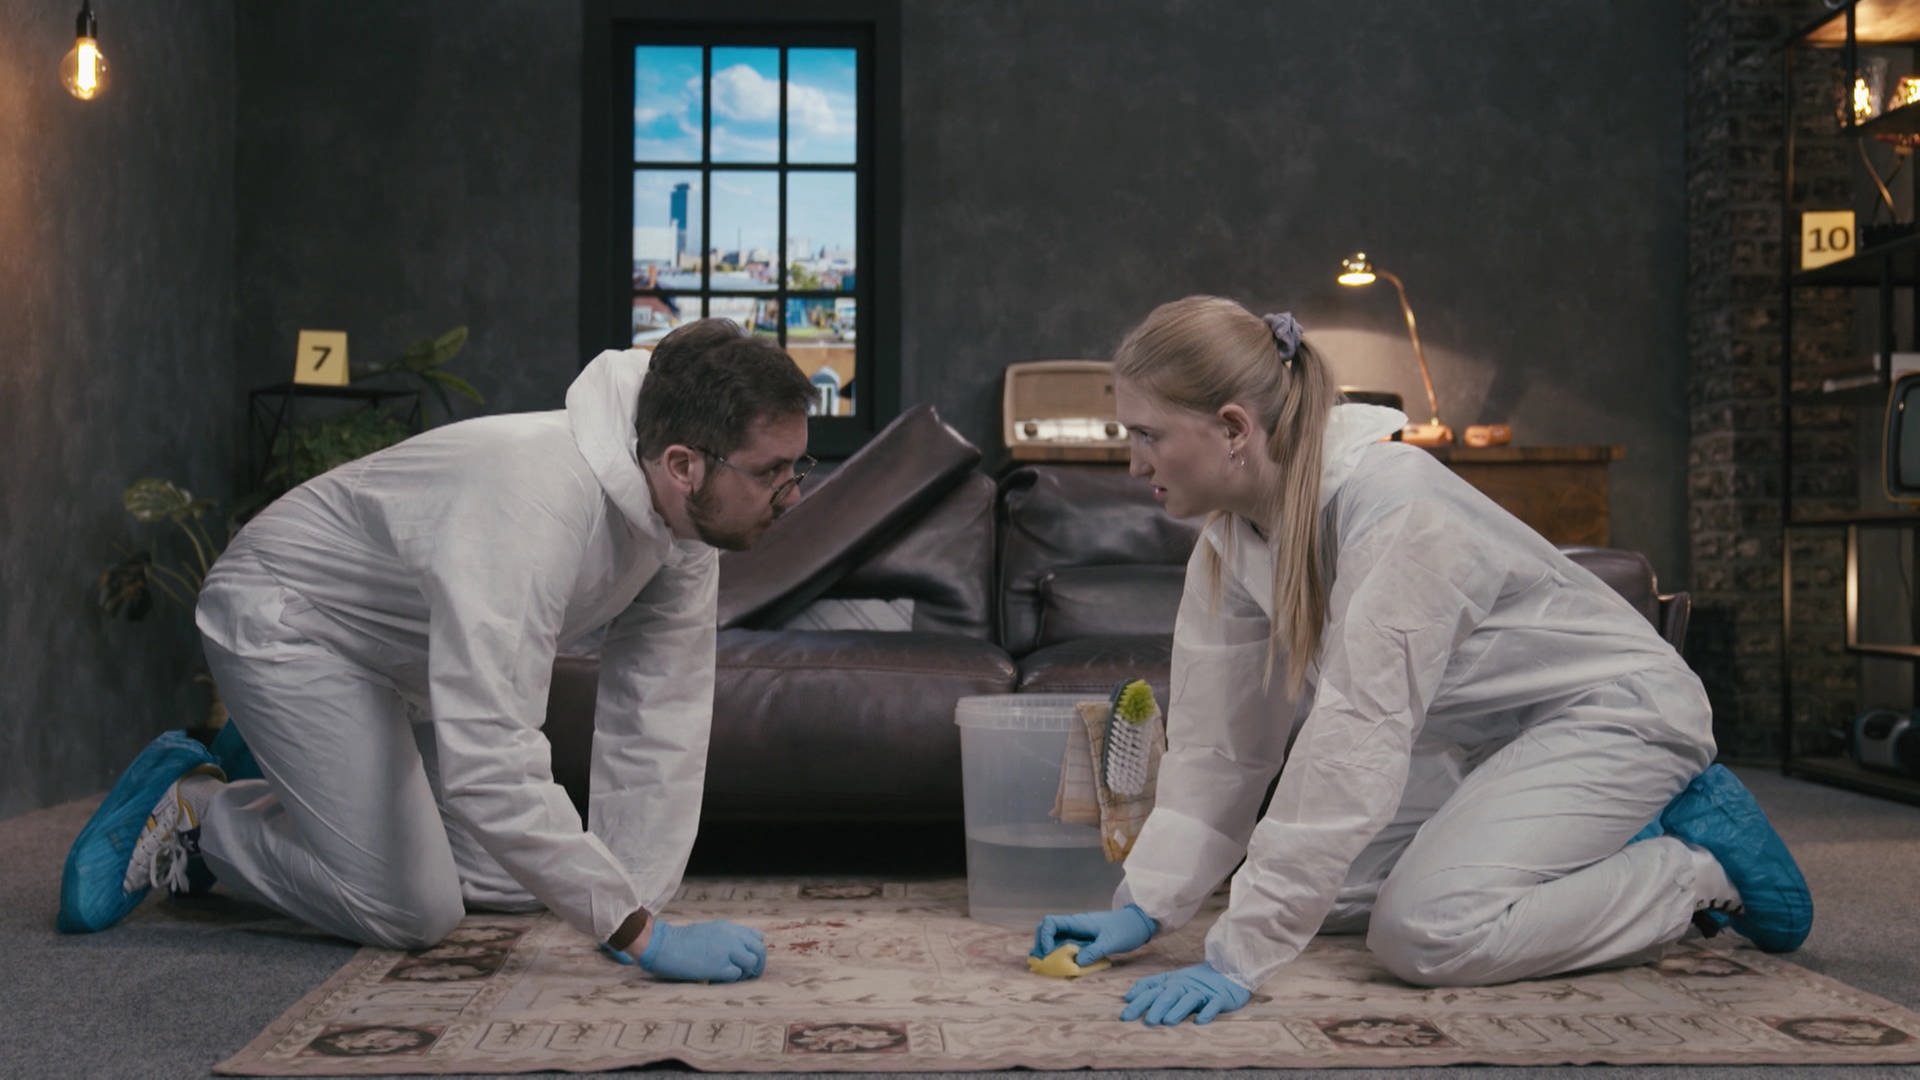 Zwei Personen in Schutzanzügen knien auf einem Teppich und reinigen ihn mit Schwämmen.